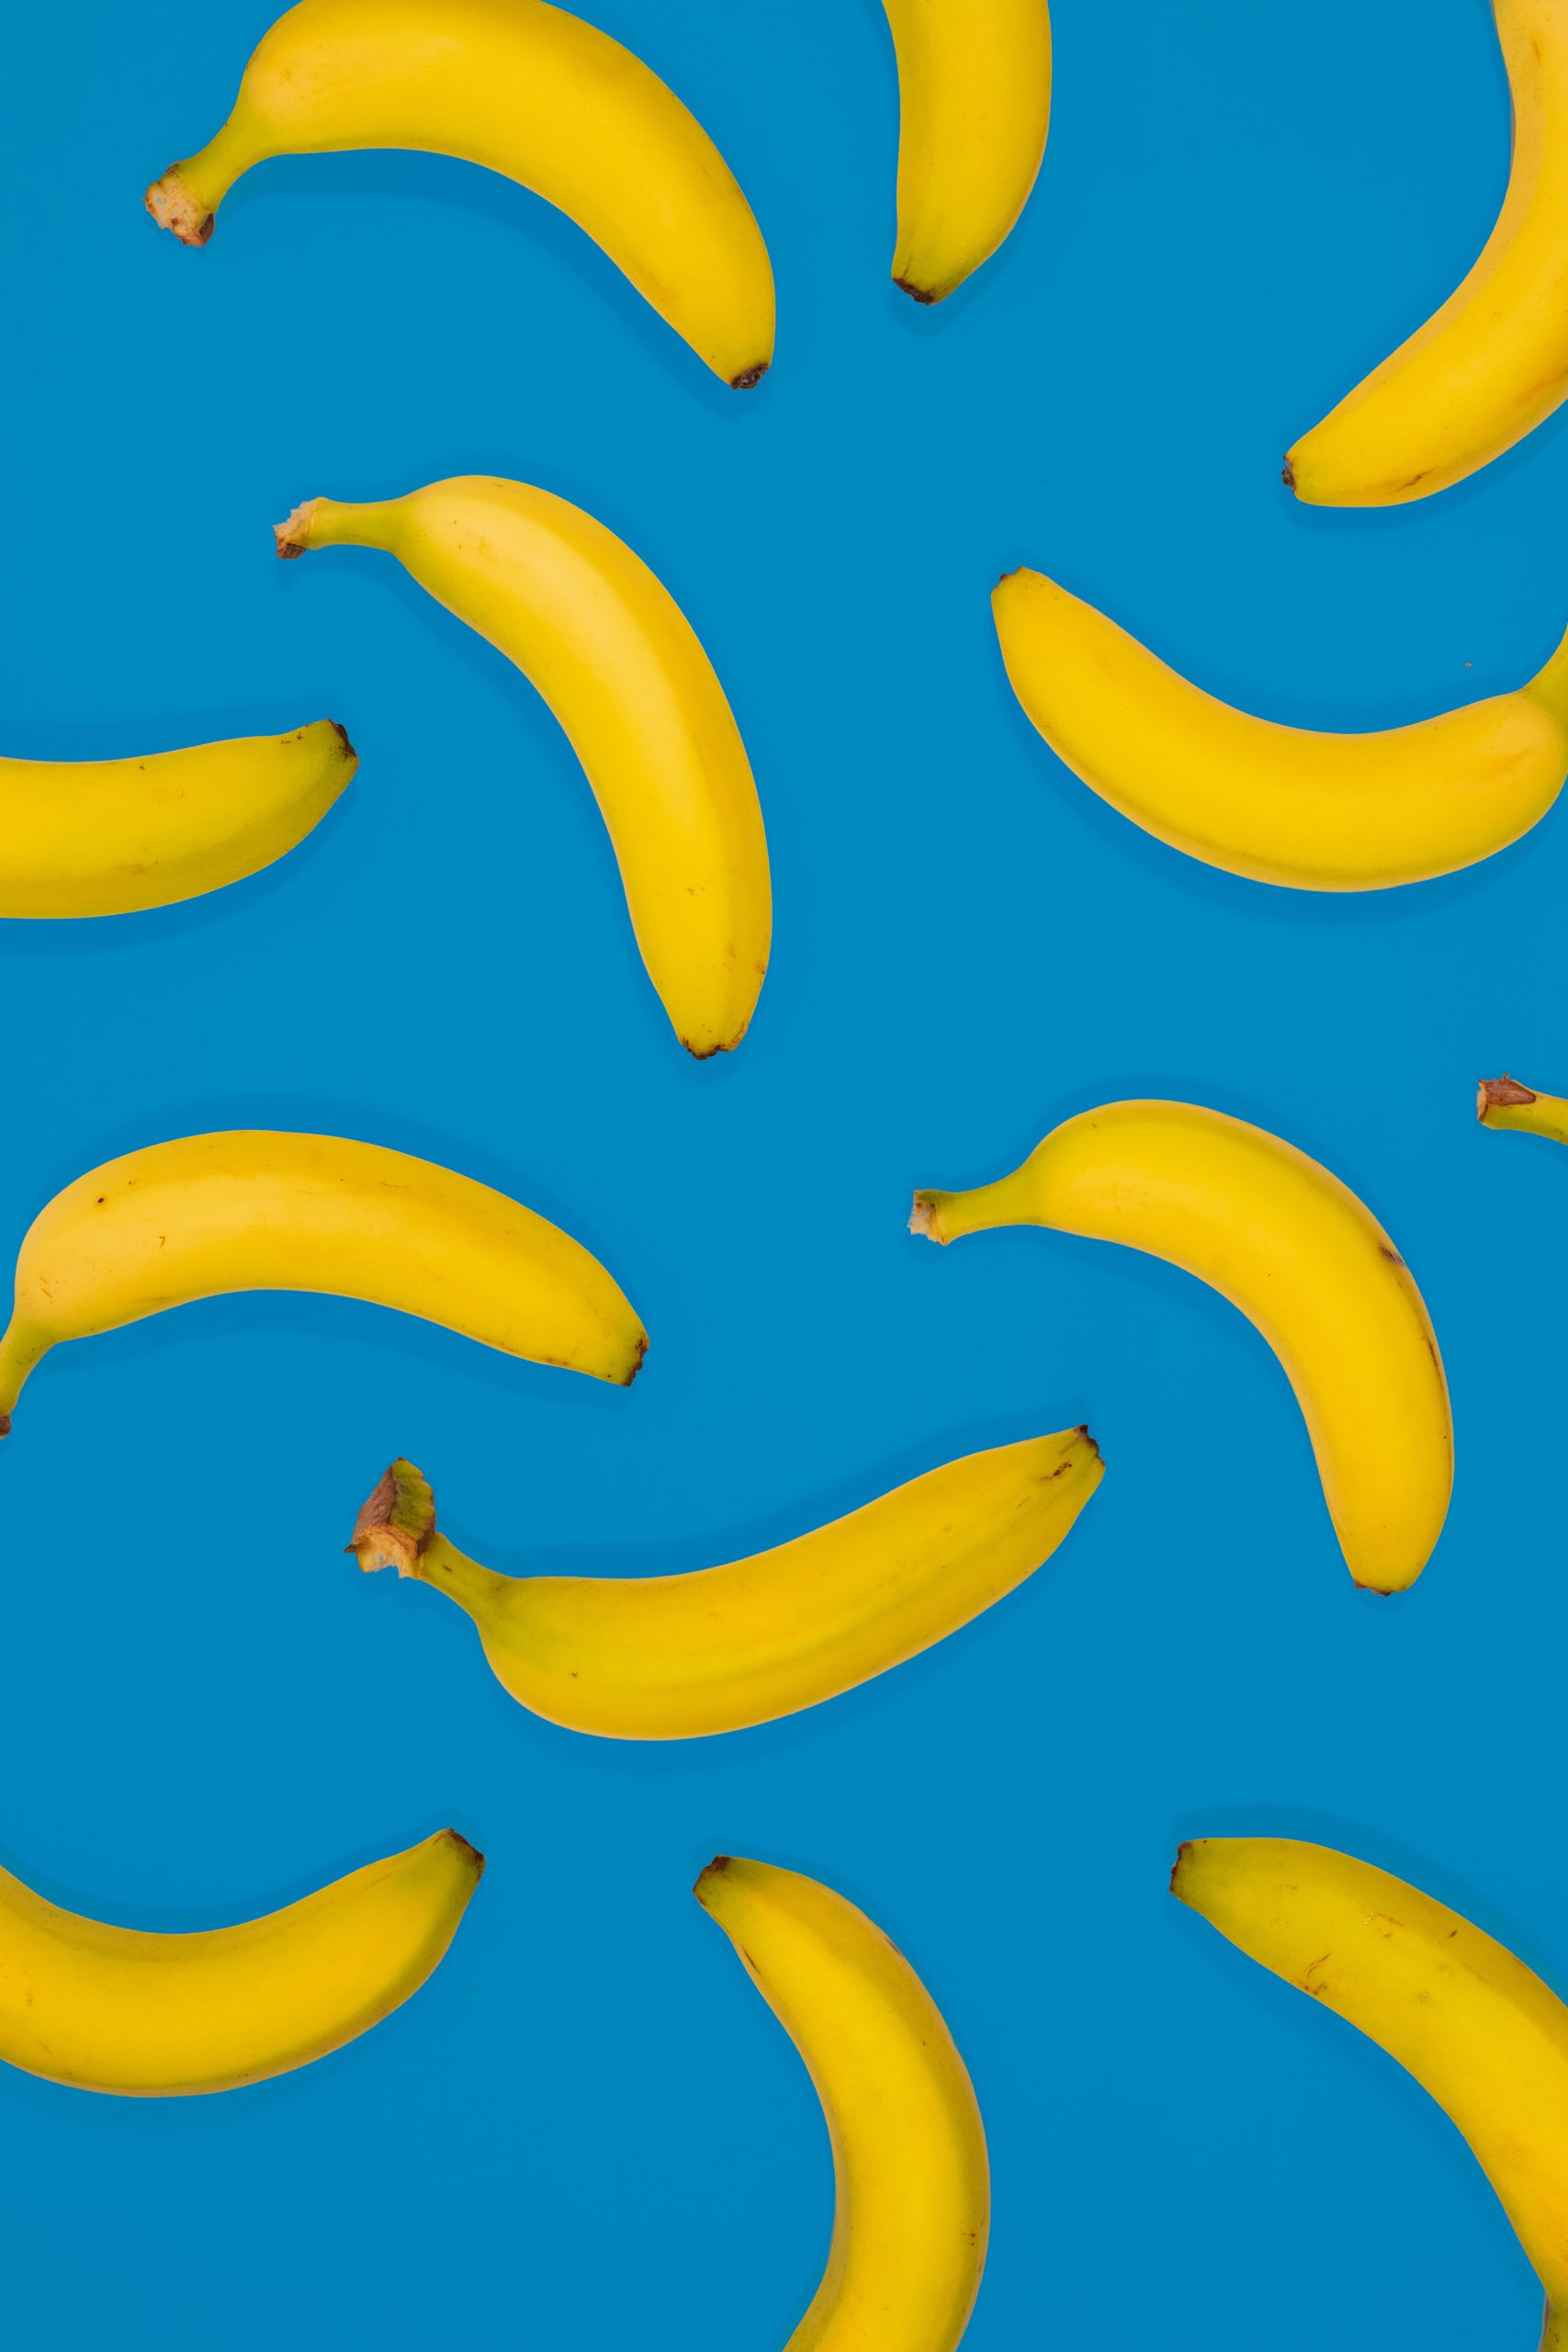 Do Bananas Contain Butyrate?